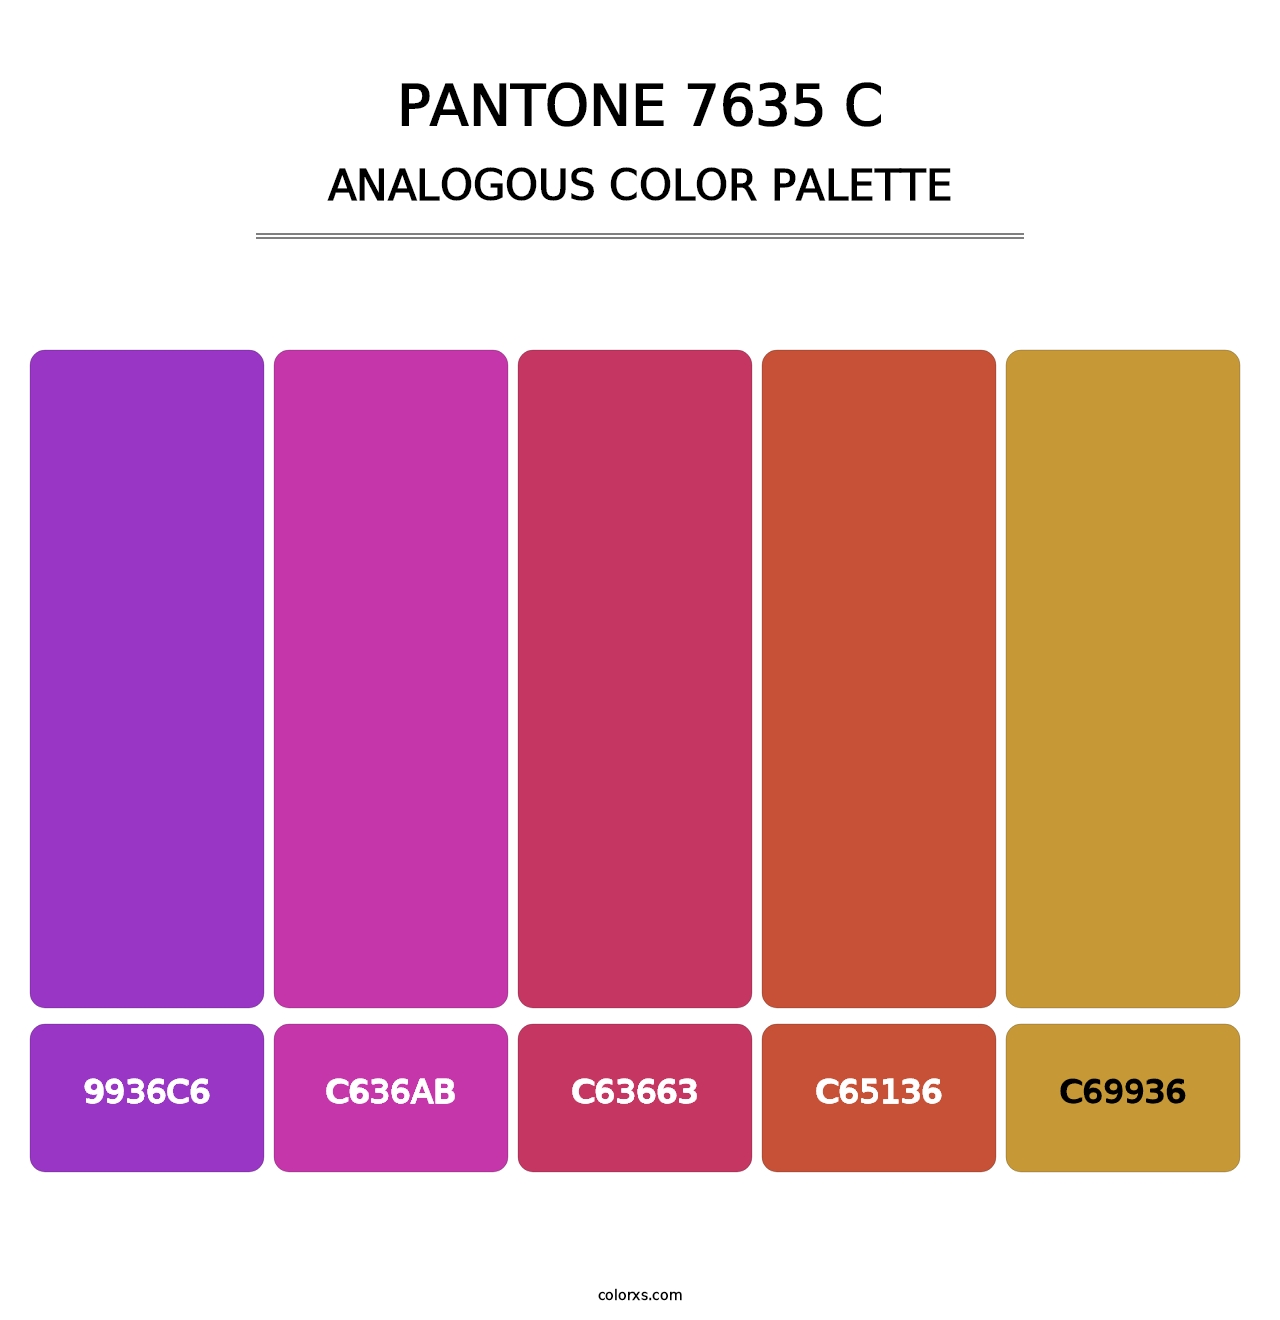 PANTONE 7635 C - Analogous Color Palette